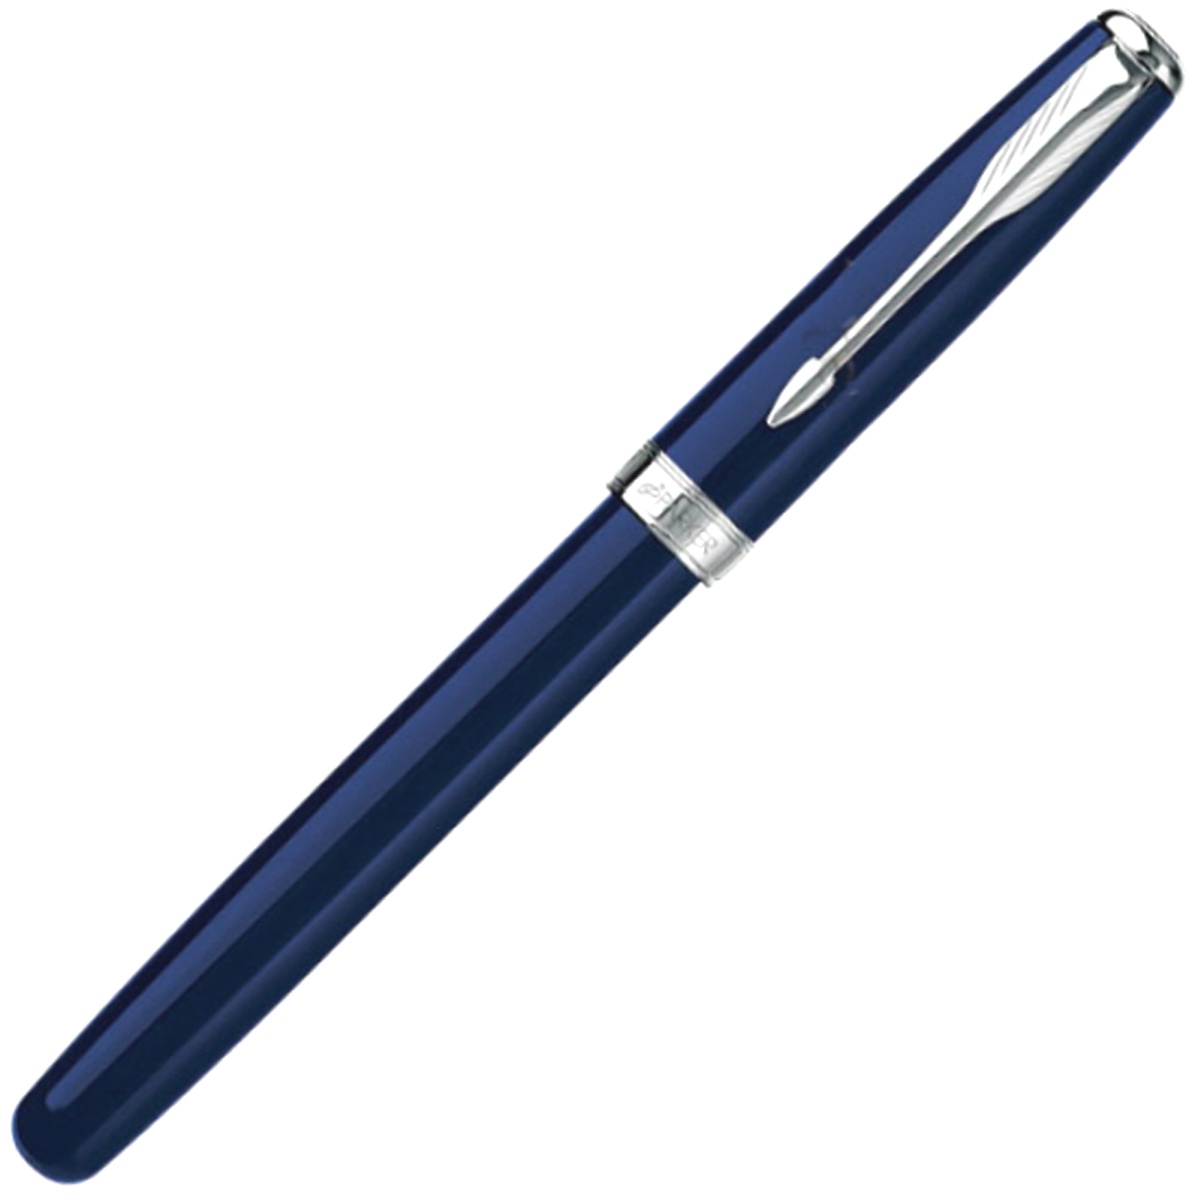 Ручка-роллер Parker Sonnet T539, Lacquer Blue СT, фото 2